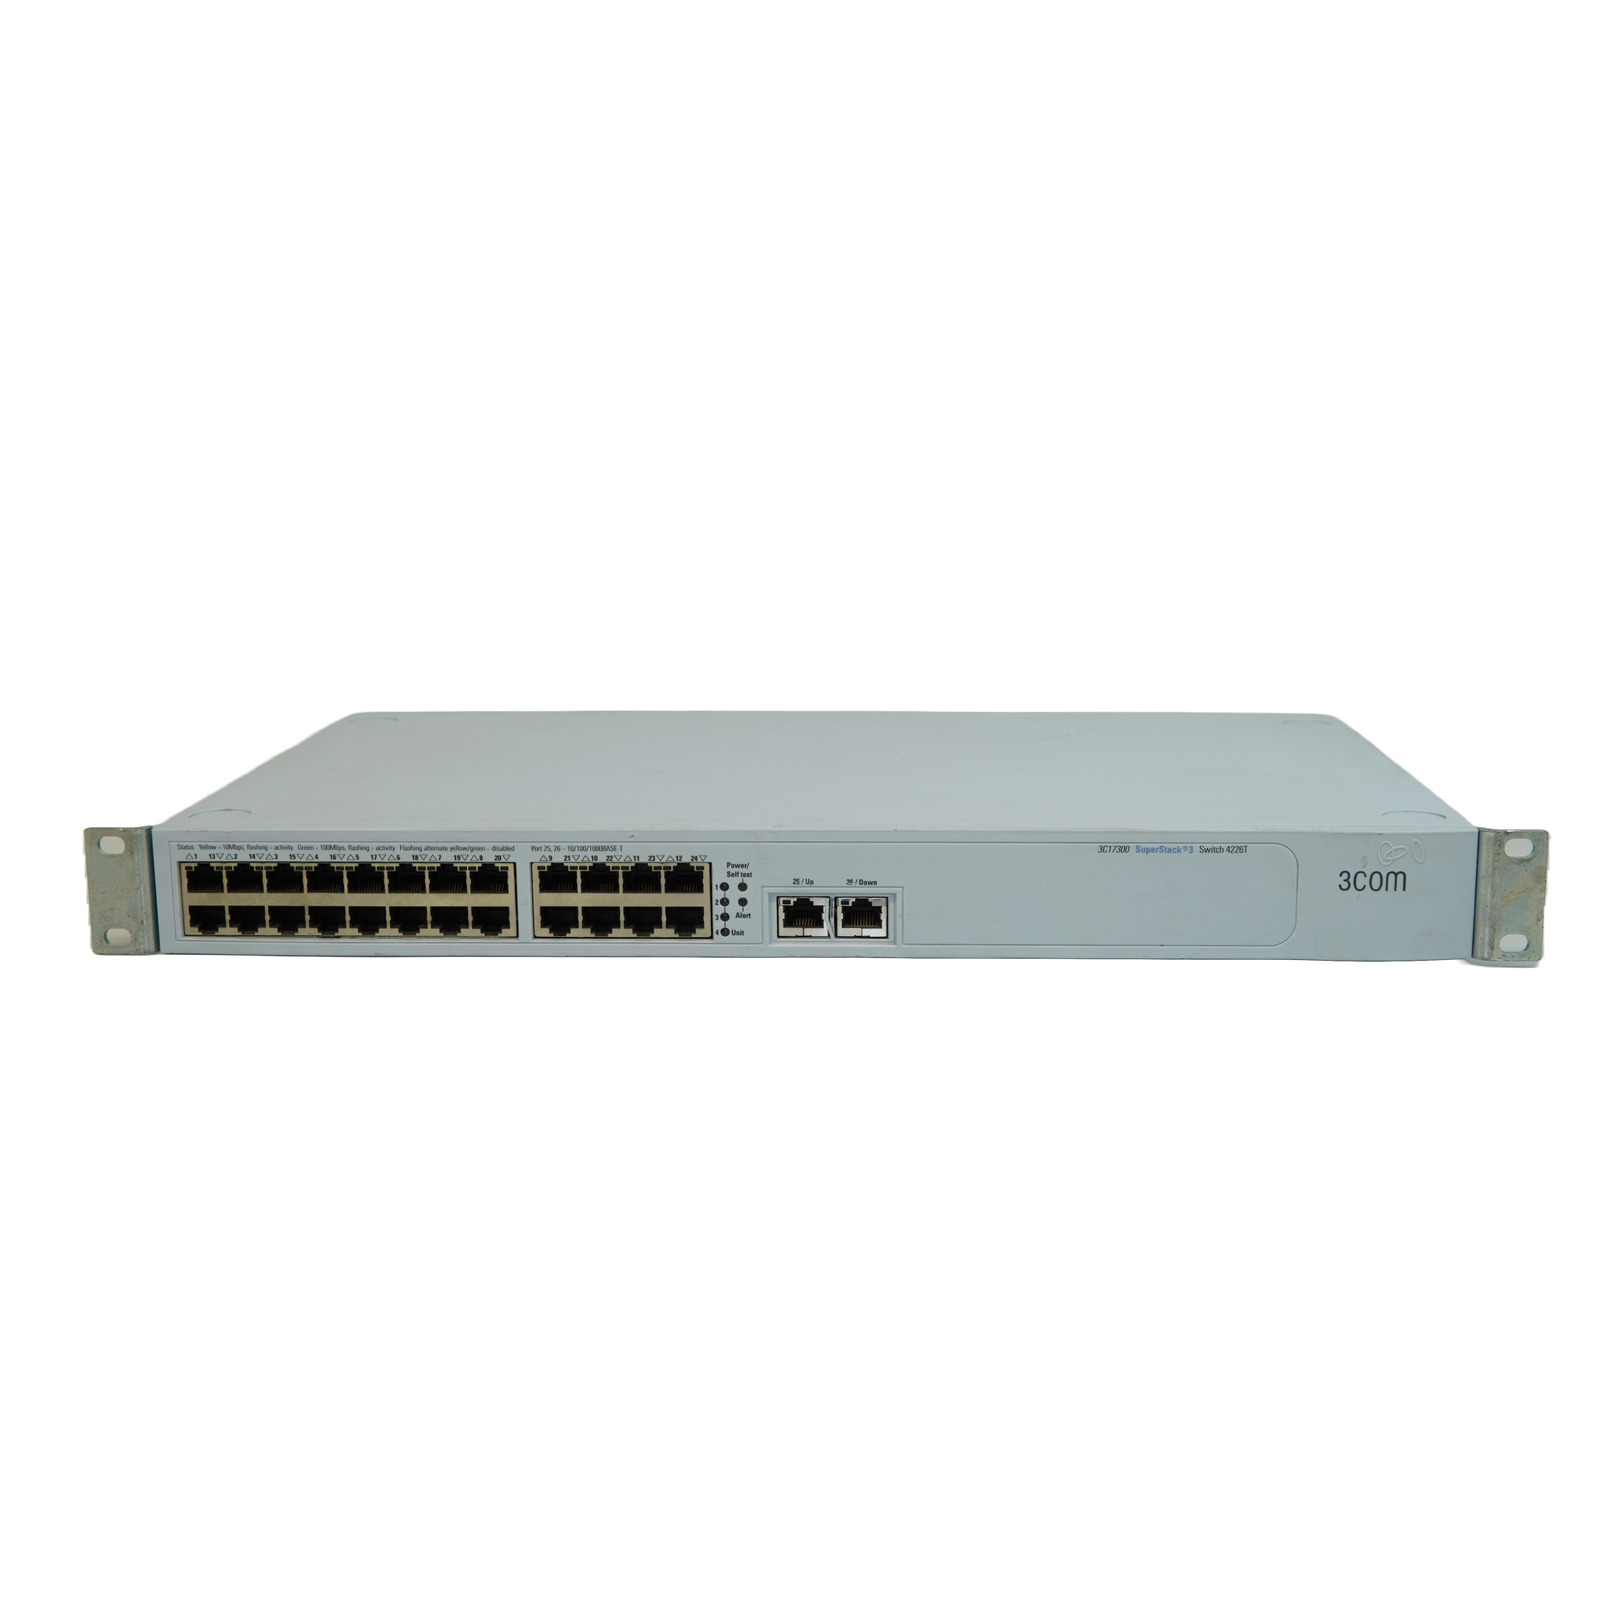 3Com SuperStack 3 24-Port Fast Ethernet Switch 3C17300 4226T 1730-010-000-6